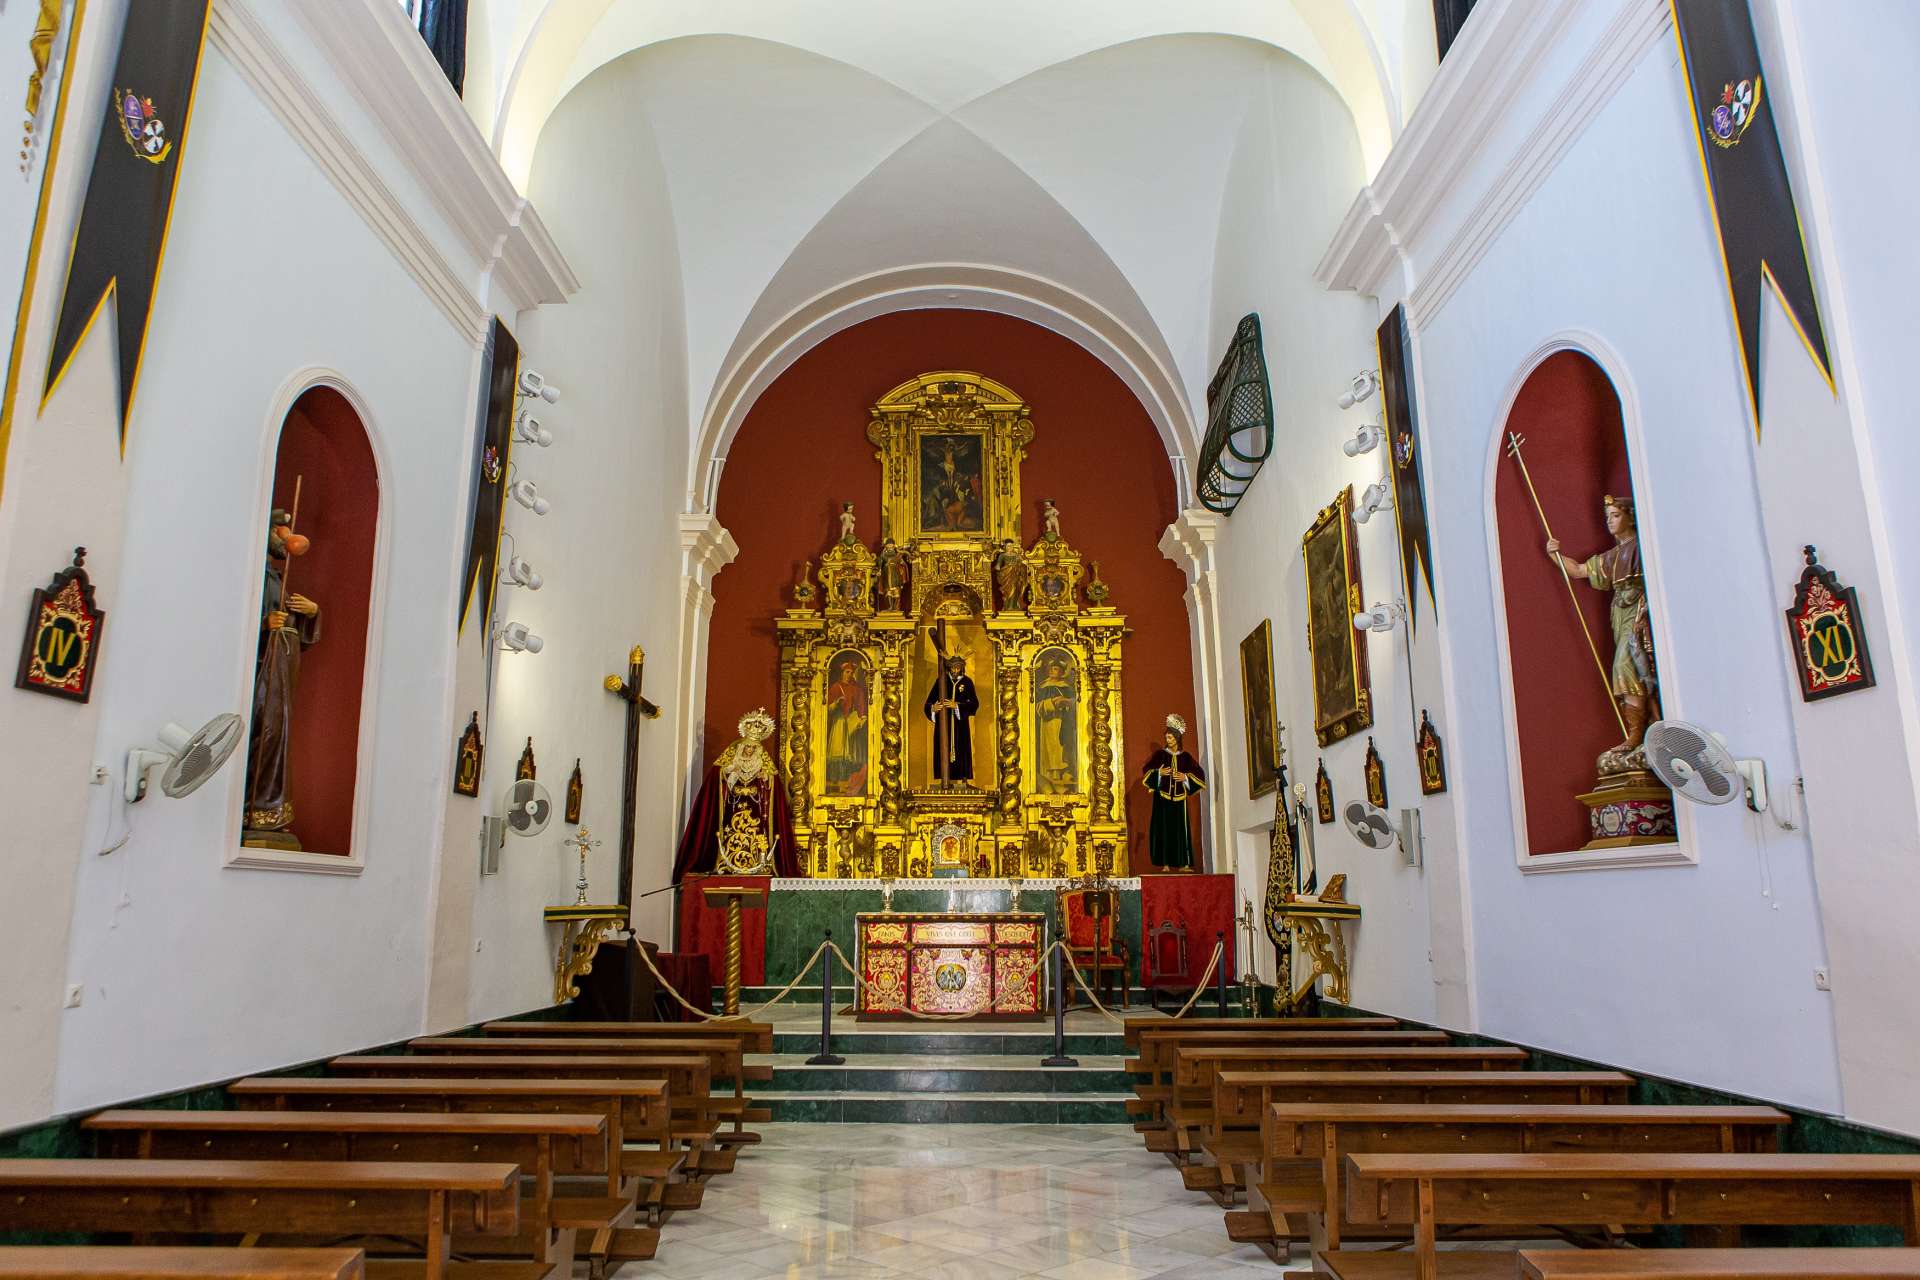 Church of San Felipe Neri